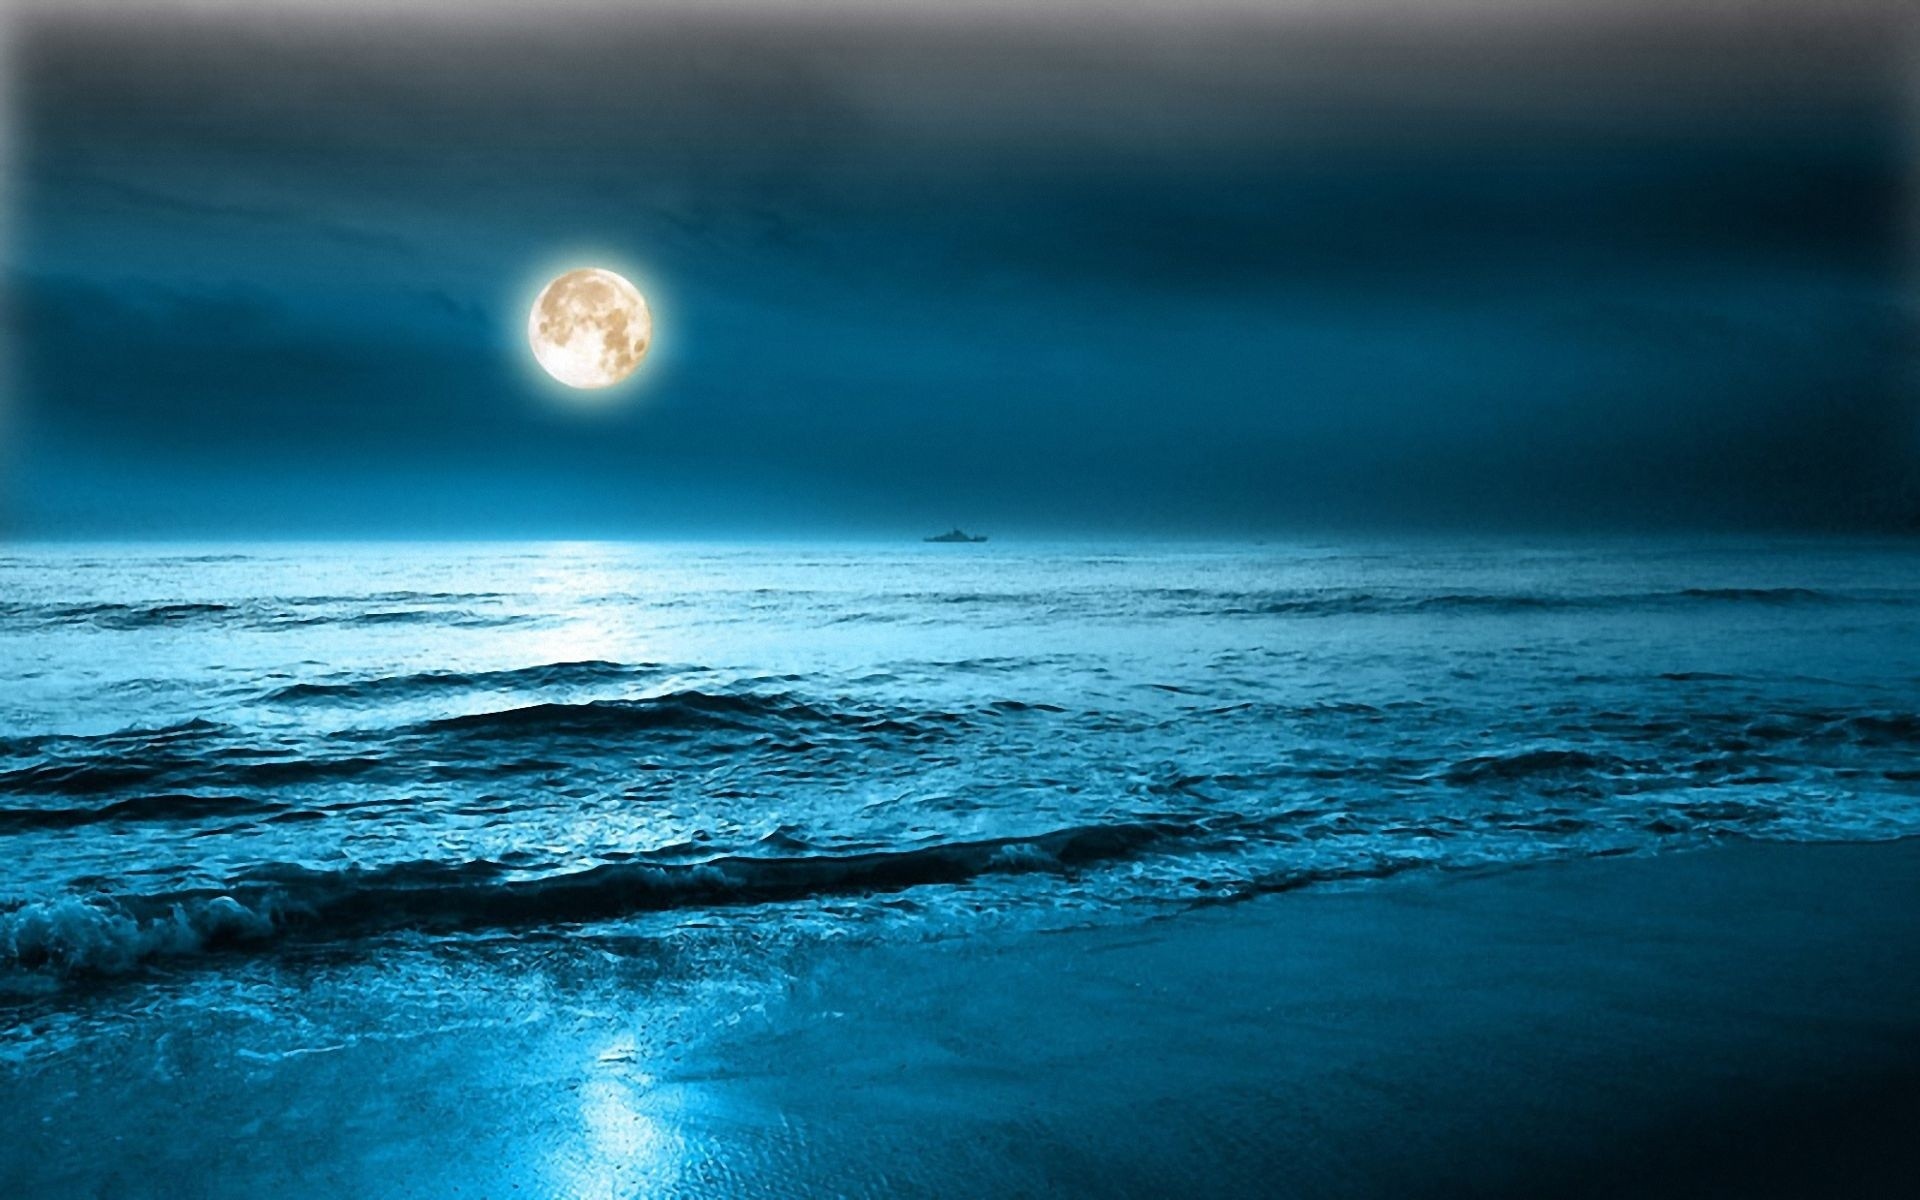 Скачать обои бесплатно Море, Ночь, Луна, Горизонт, Океан, Синий, Земля/природа картинка на рабочий стол ПК